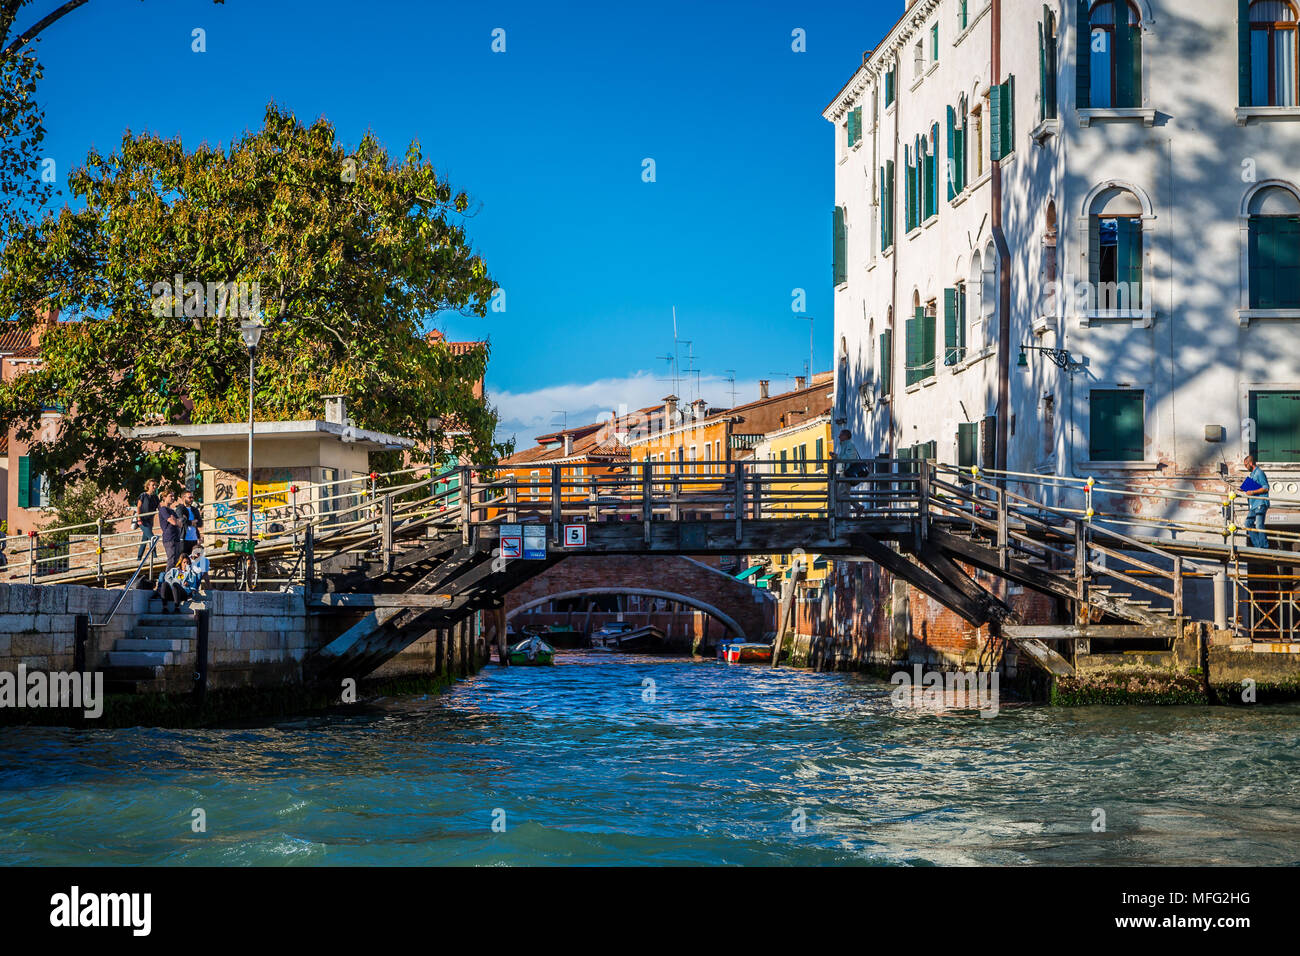 Canal grande, Venice, Italy Stock Photo